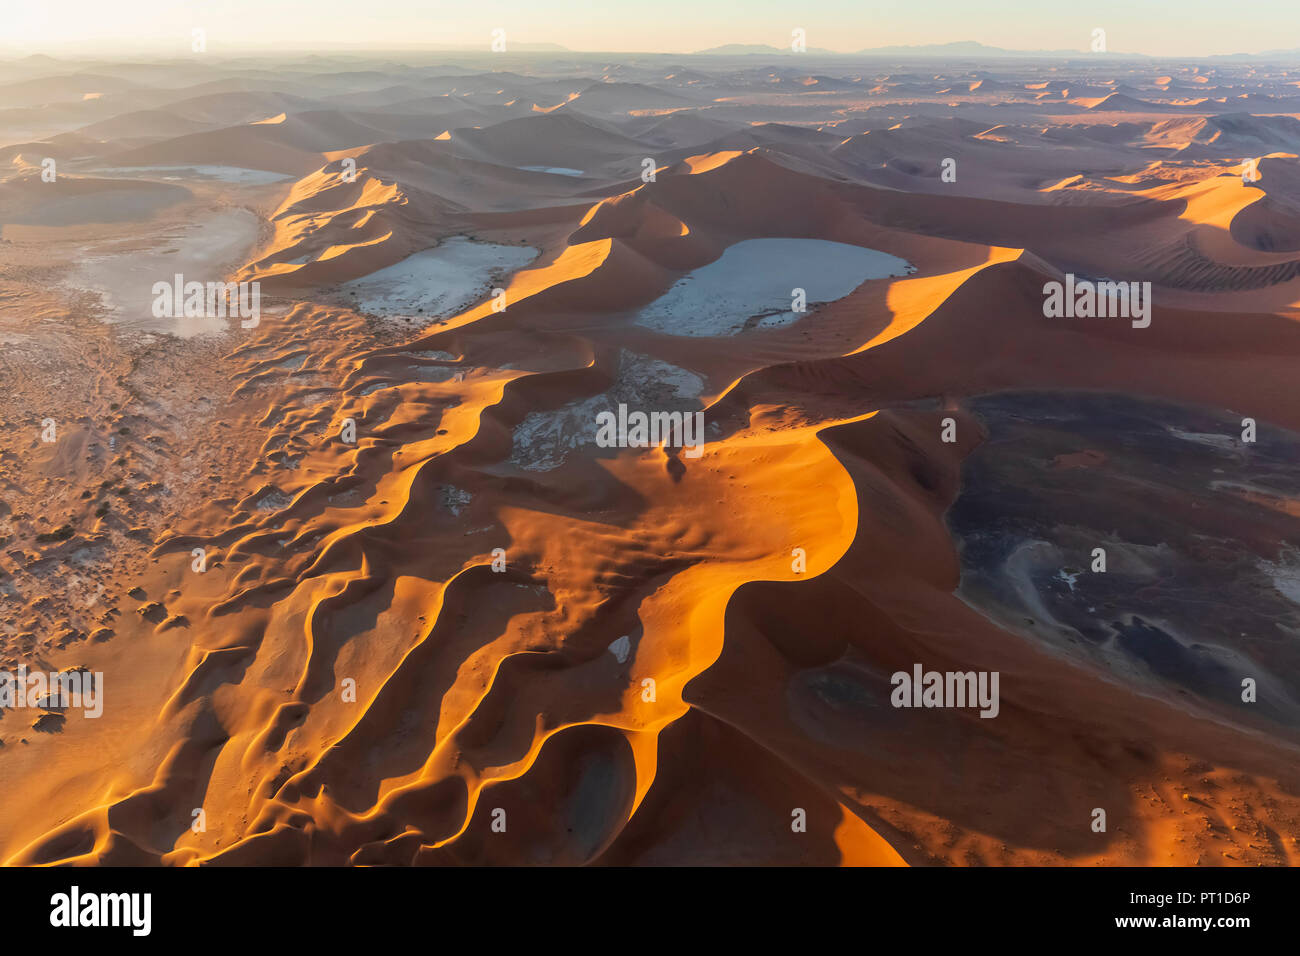 Afrika, Namibia, die Wüste Namib, Namib-Naukluft-Nationalpark, Luftaufnahme von Dünen der Wüste, Dead Vlei und 'Big Daddy' im Morgenlicht Stockfoto